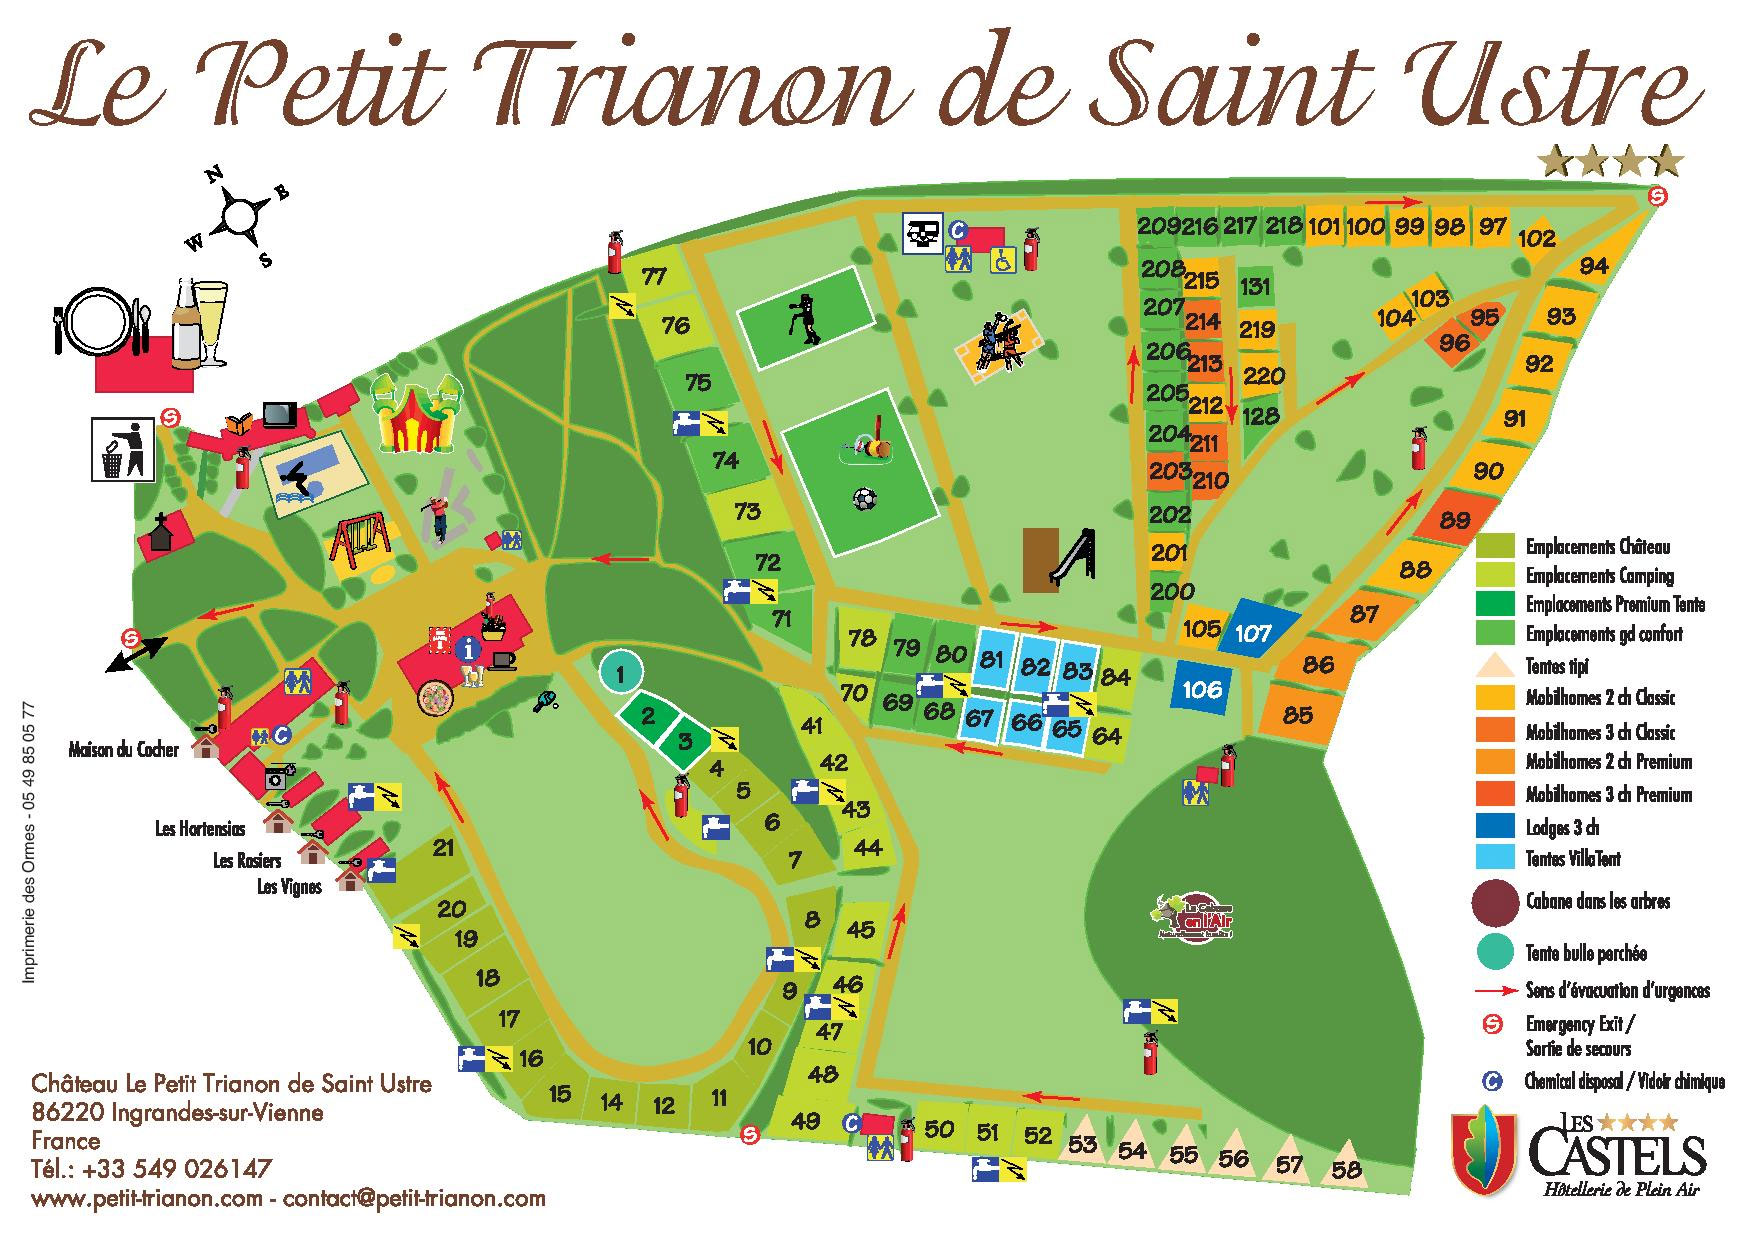 Campsite map Le Petit Trianon